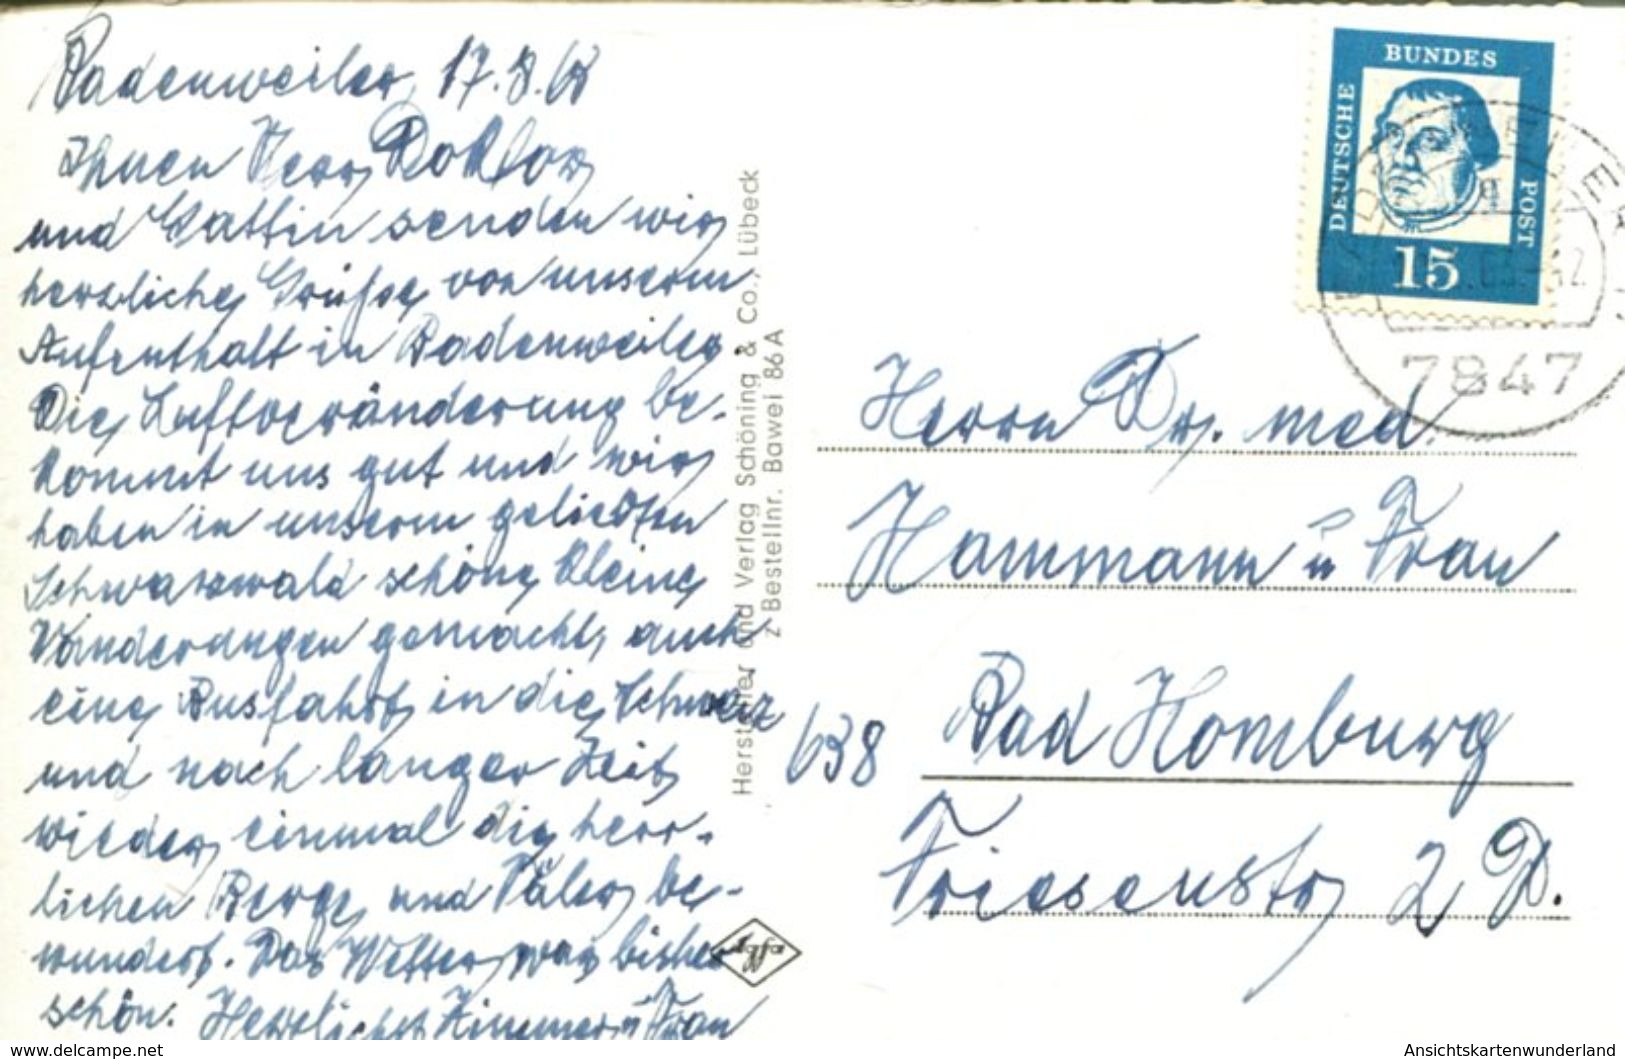 003265 Gruss Aus Badenweiler Im Schwarzwald Mehrbildkarte 1968 - Badenweiler